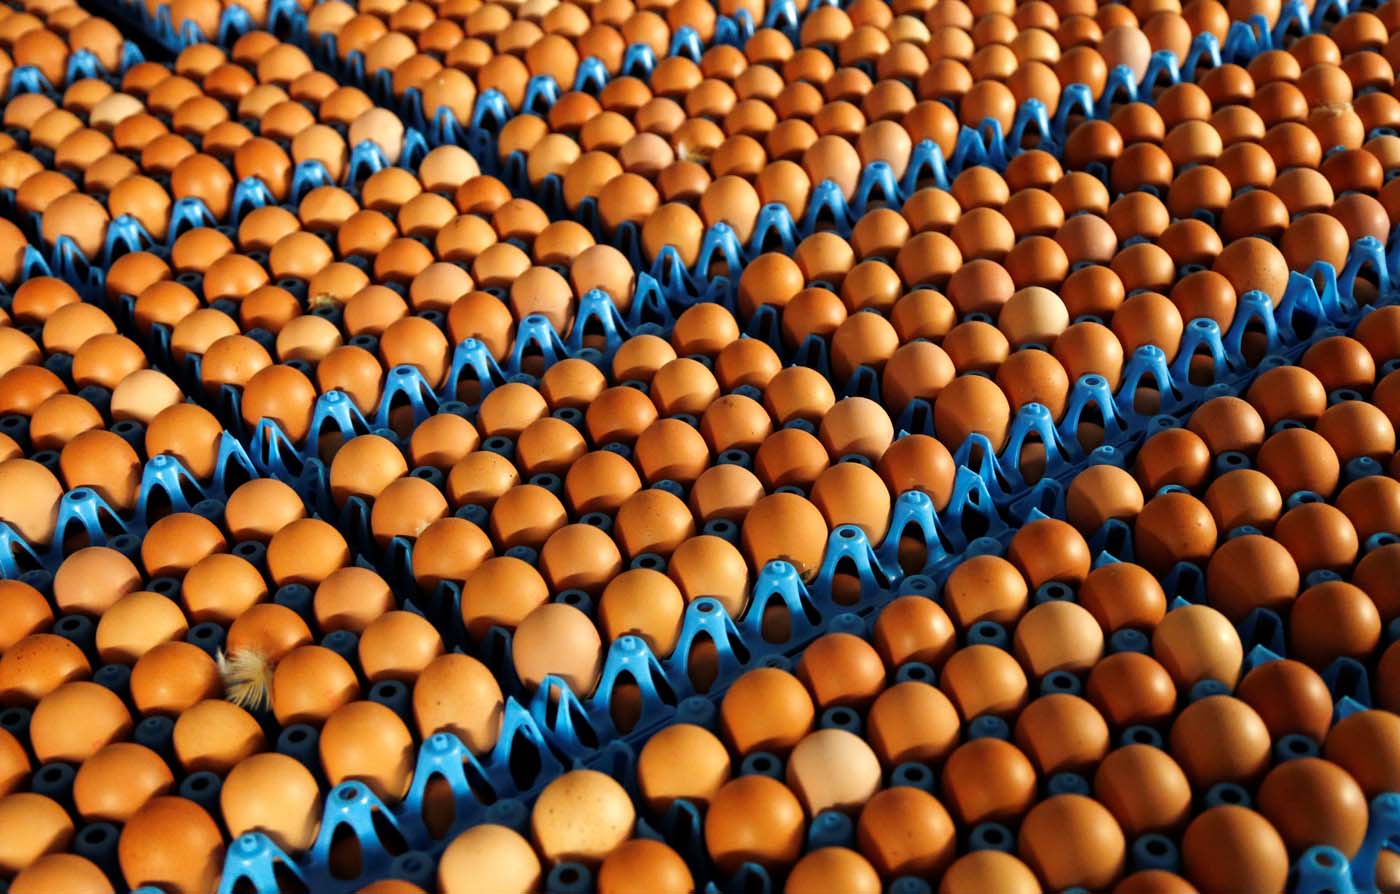 Comisión Europea convoca a países afectados por huevos contaminados